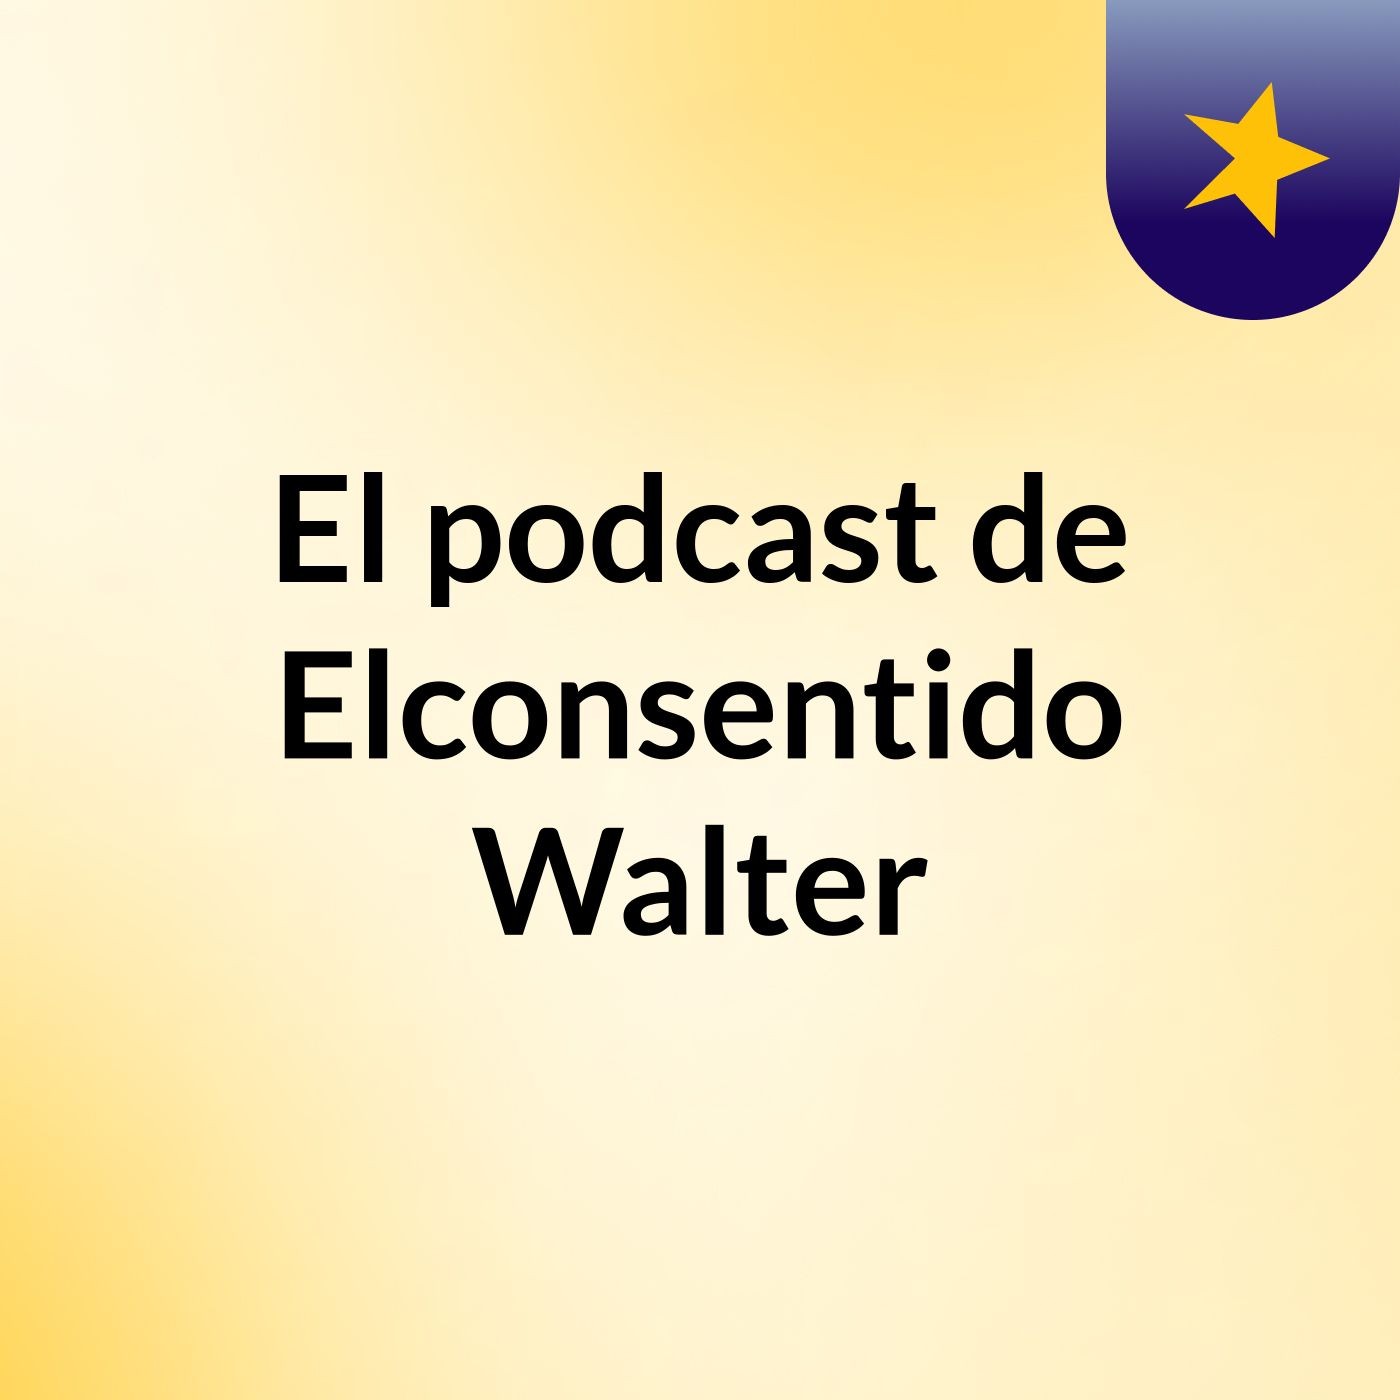 Episodio 2 - El podcast de Elconsentido Walter